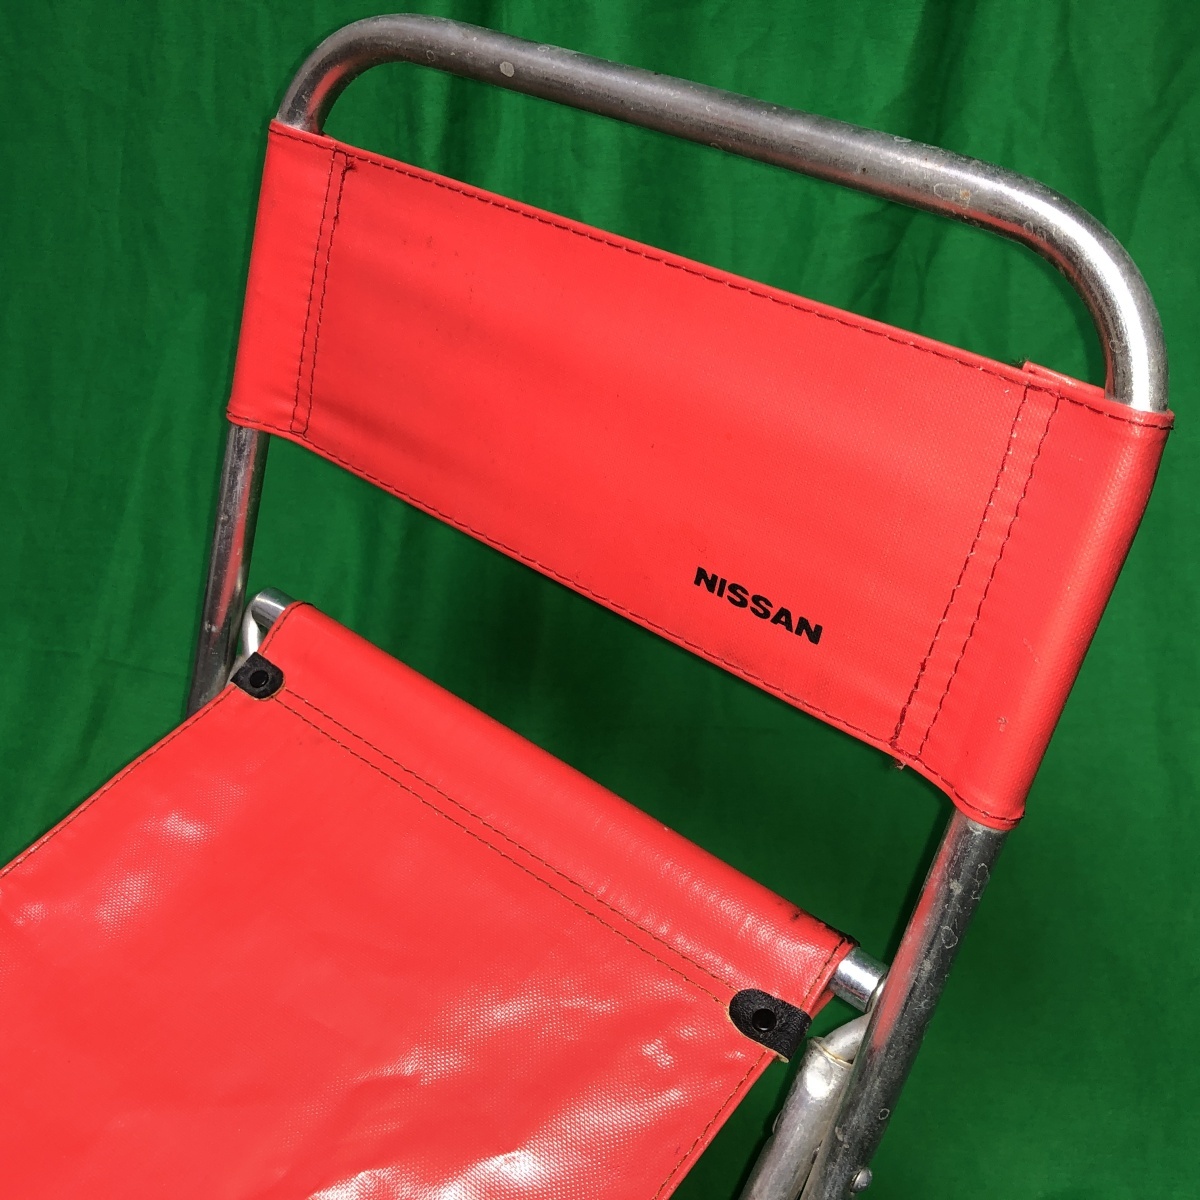 椅子 折りたたみ パイプいす 日産 NISSAN 赤 チェア レトロ レジャーチェア アウトドア レア 中古品 (2)_画像2